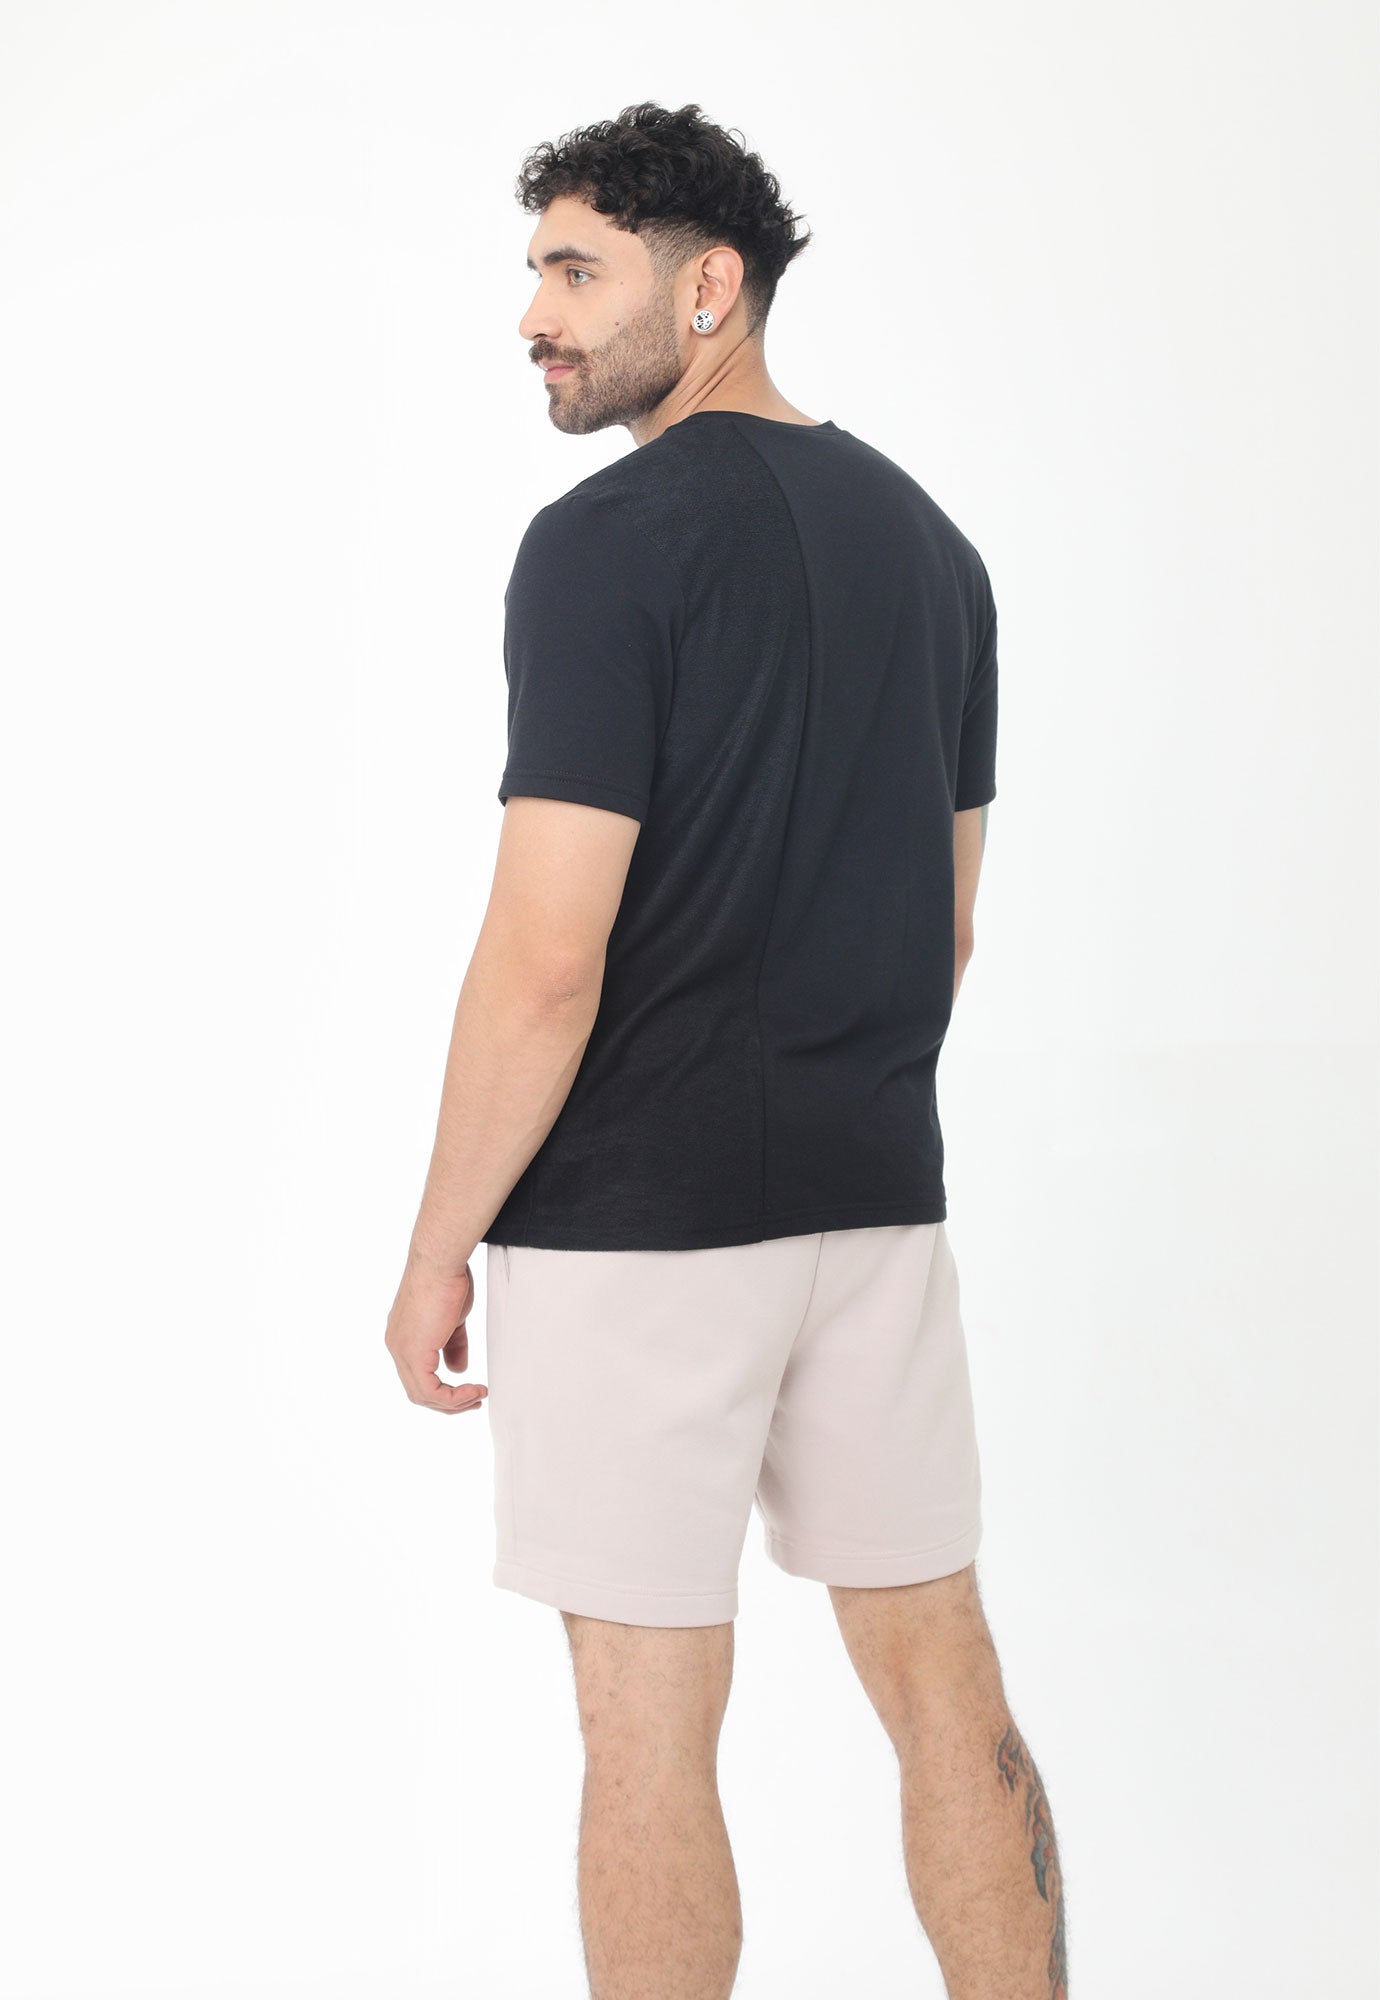 Camiseta negra manga corta, bloque vertical en revés de tela, estampado en frente y cuello redondo para hombre